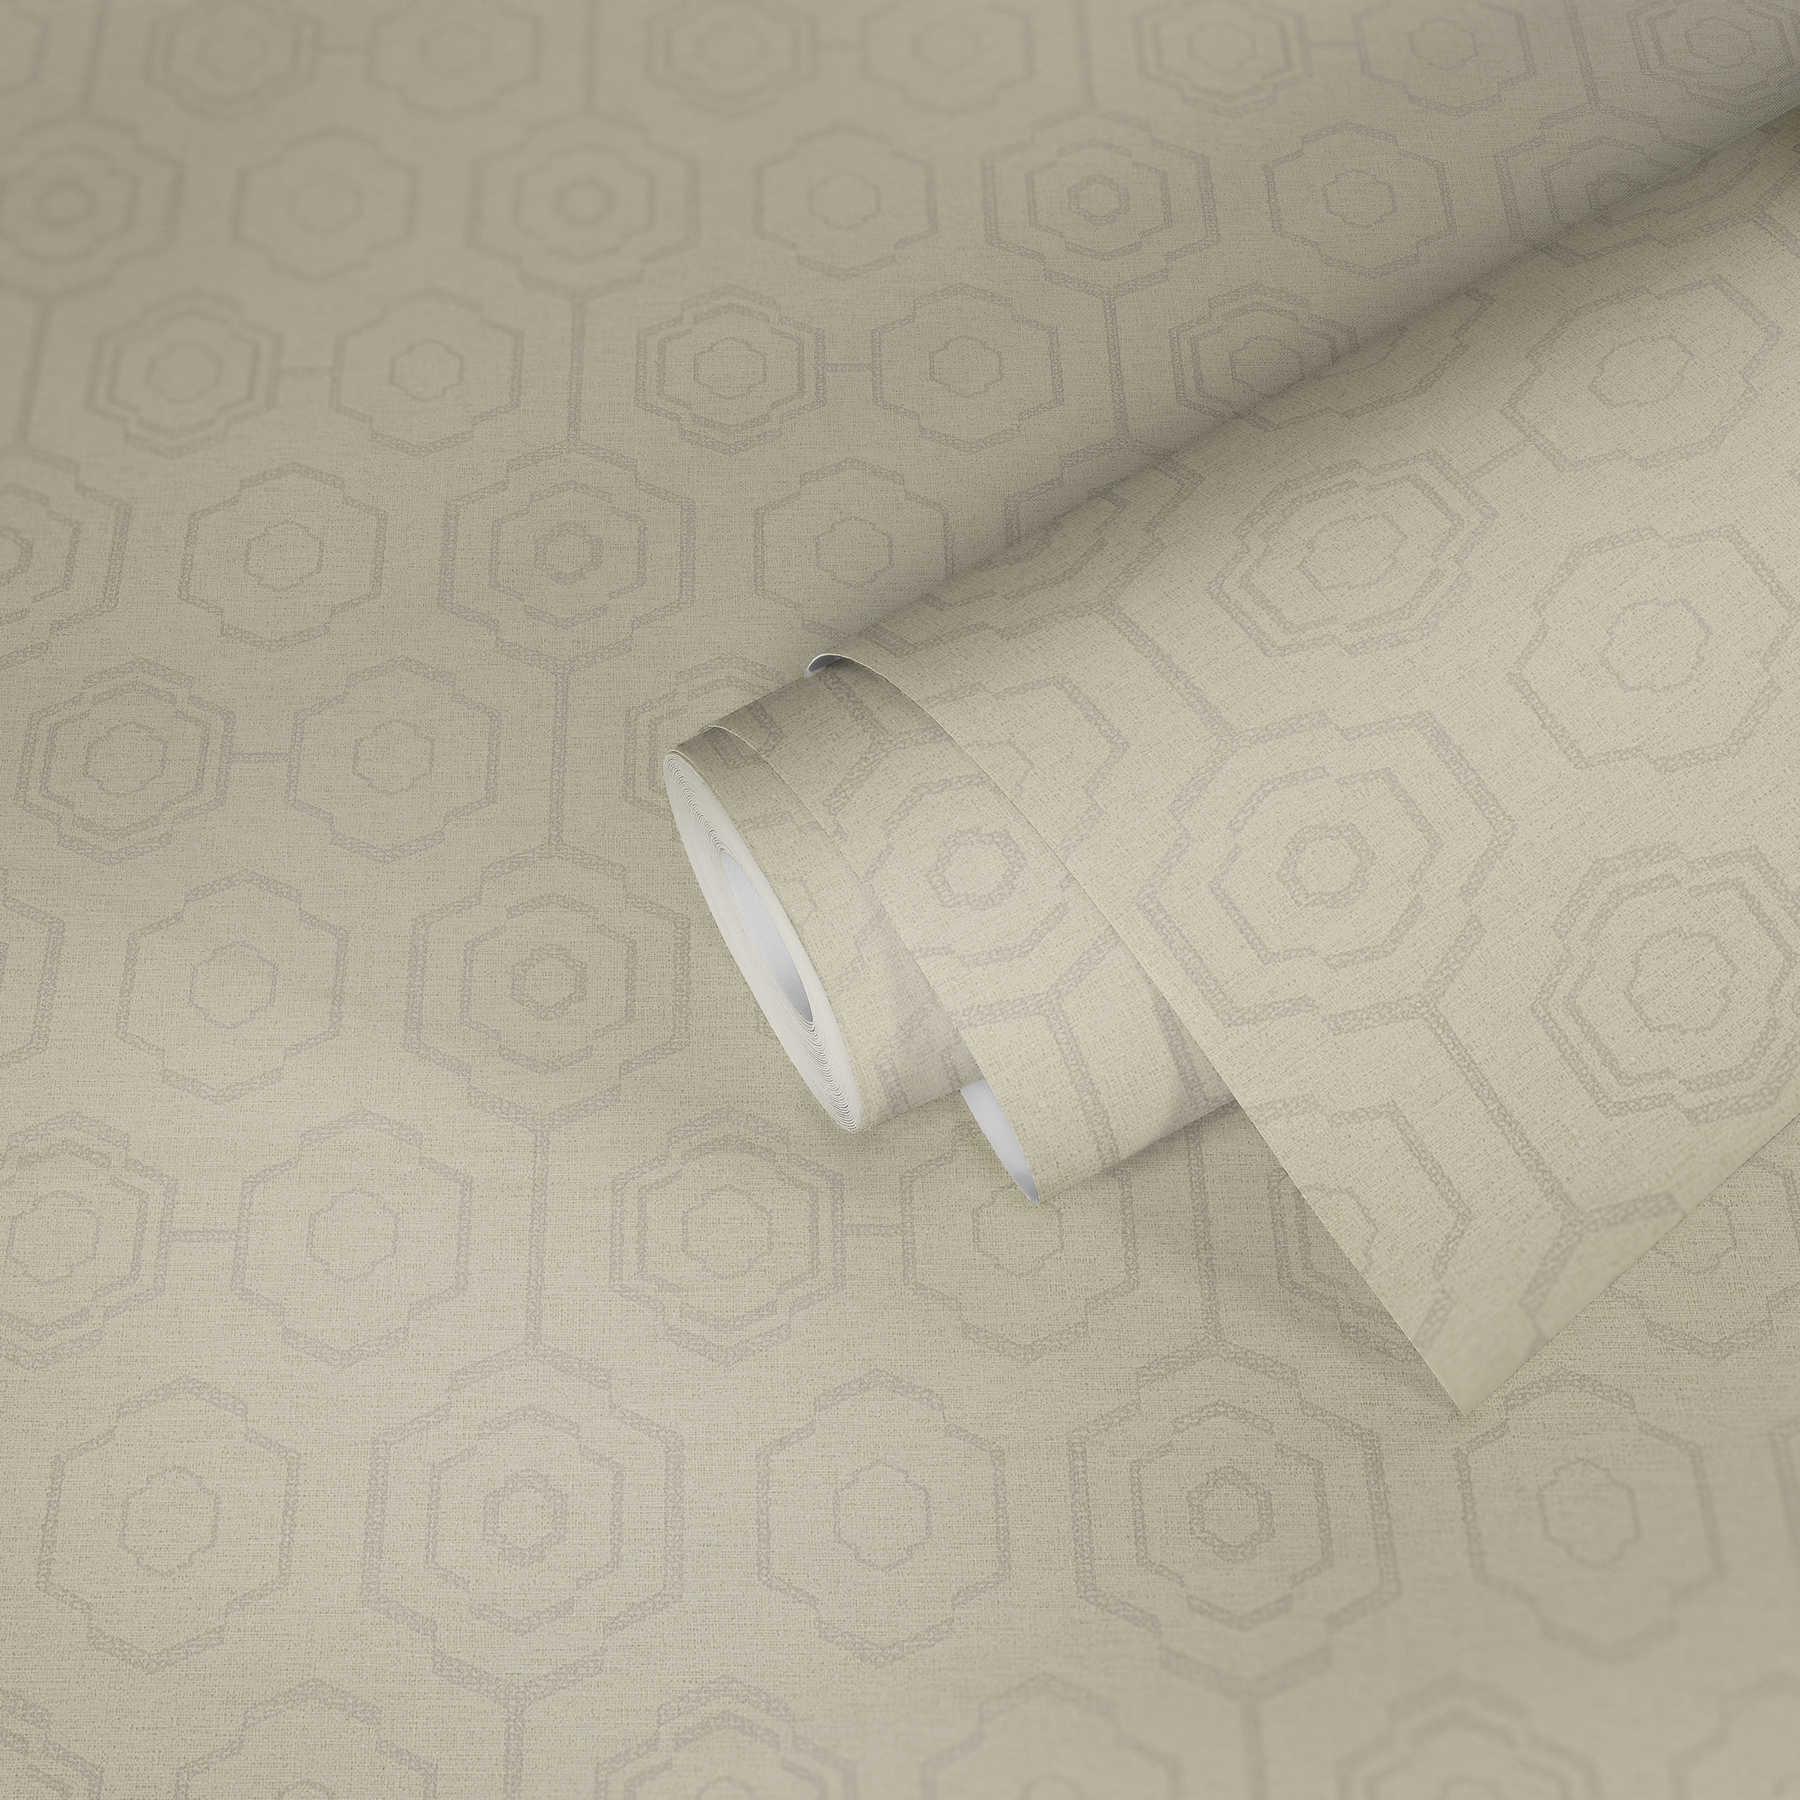             Textiel-look behang geometrisch design & glans effect - crème, grijs, beige
        